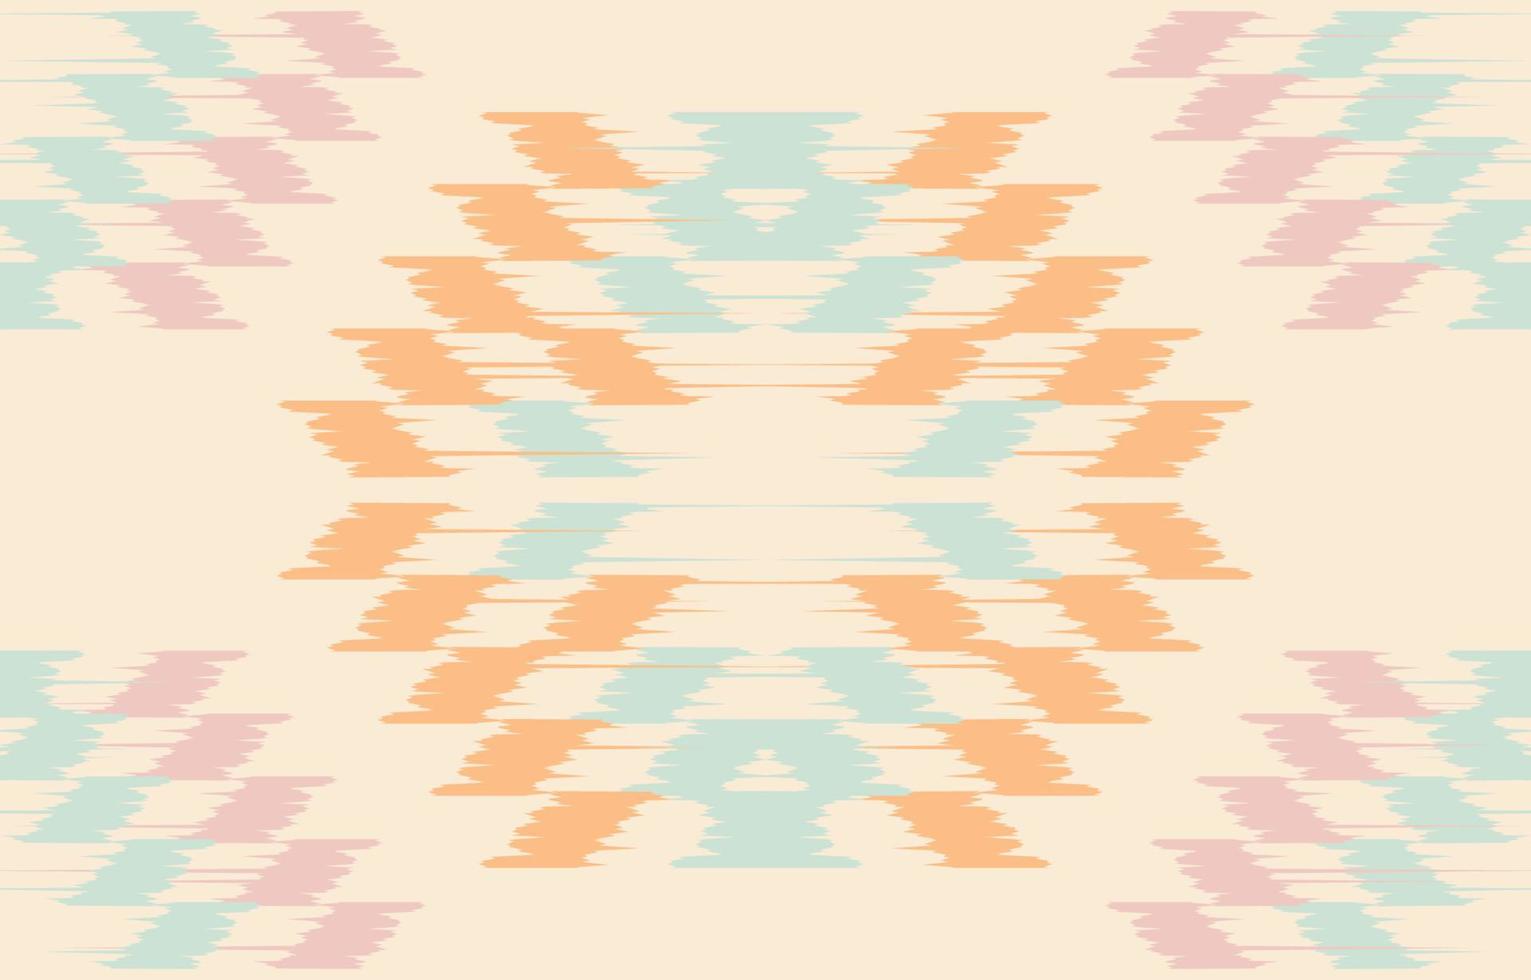 motif aztèque ethnique ikat art. le motif pastel aztèque harmonieux en broderie tribale, folklorique, mexicaine, ouzbèke. conception texturée d'impression d'ornement d'art géométrique marocain pour tapis, tissu. vecteur